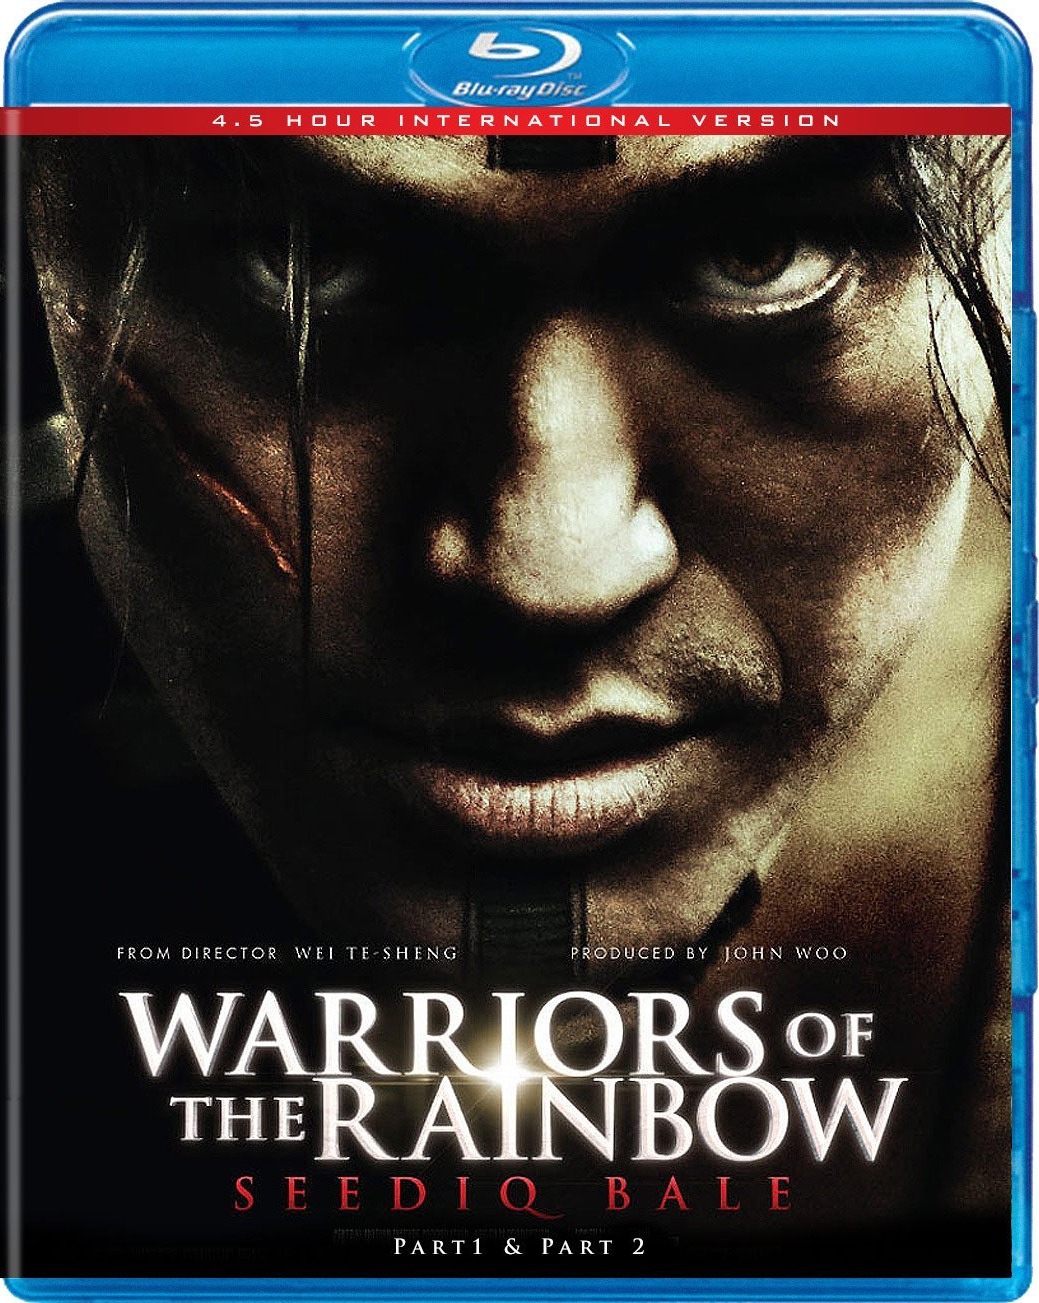 赛德克·巴莱/赛德克·巴莱 (高低)合集/赛德克·巴莱 剪辑版/实在的人 [国语简繁中字].Warriors.of.the.Rainbow.Seediq.Bale.2011.BluRay.1080p.AVC.TrueHD.7.1.PCM.7.1-TAG 90.52GB-1.jpg